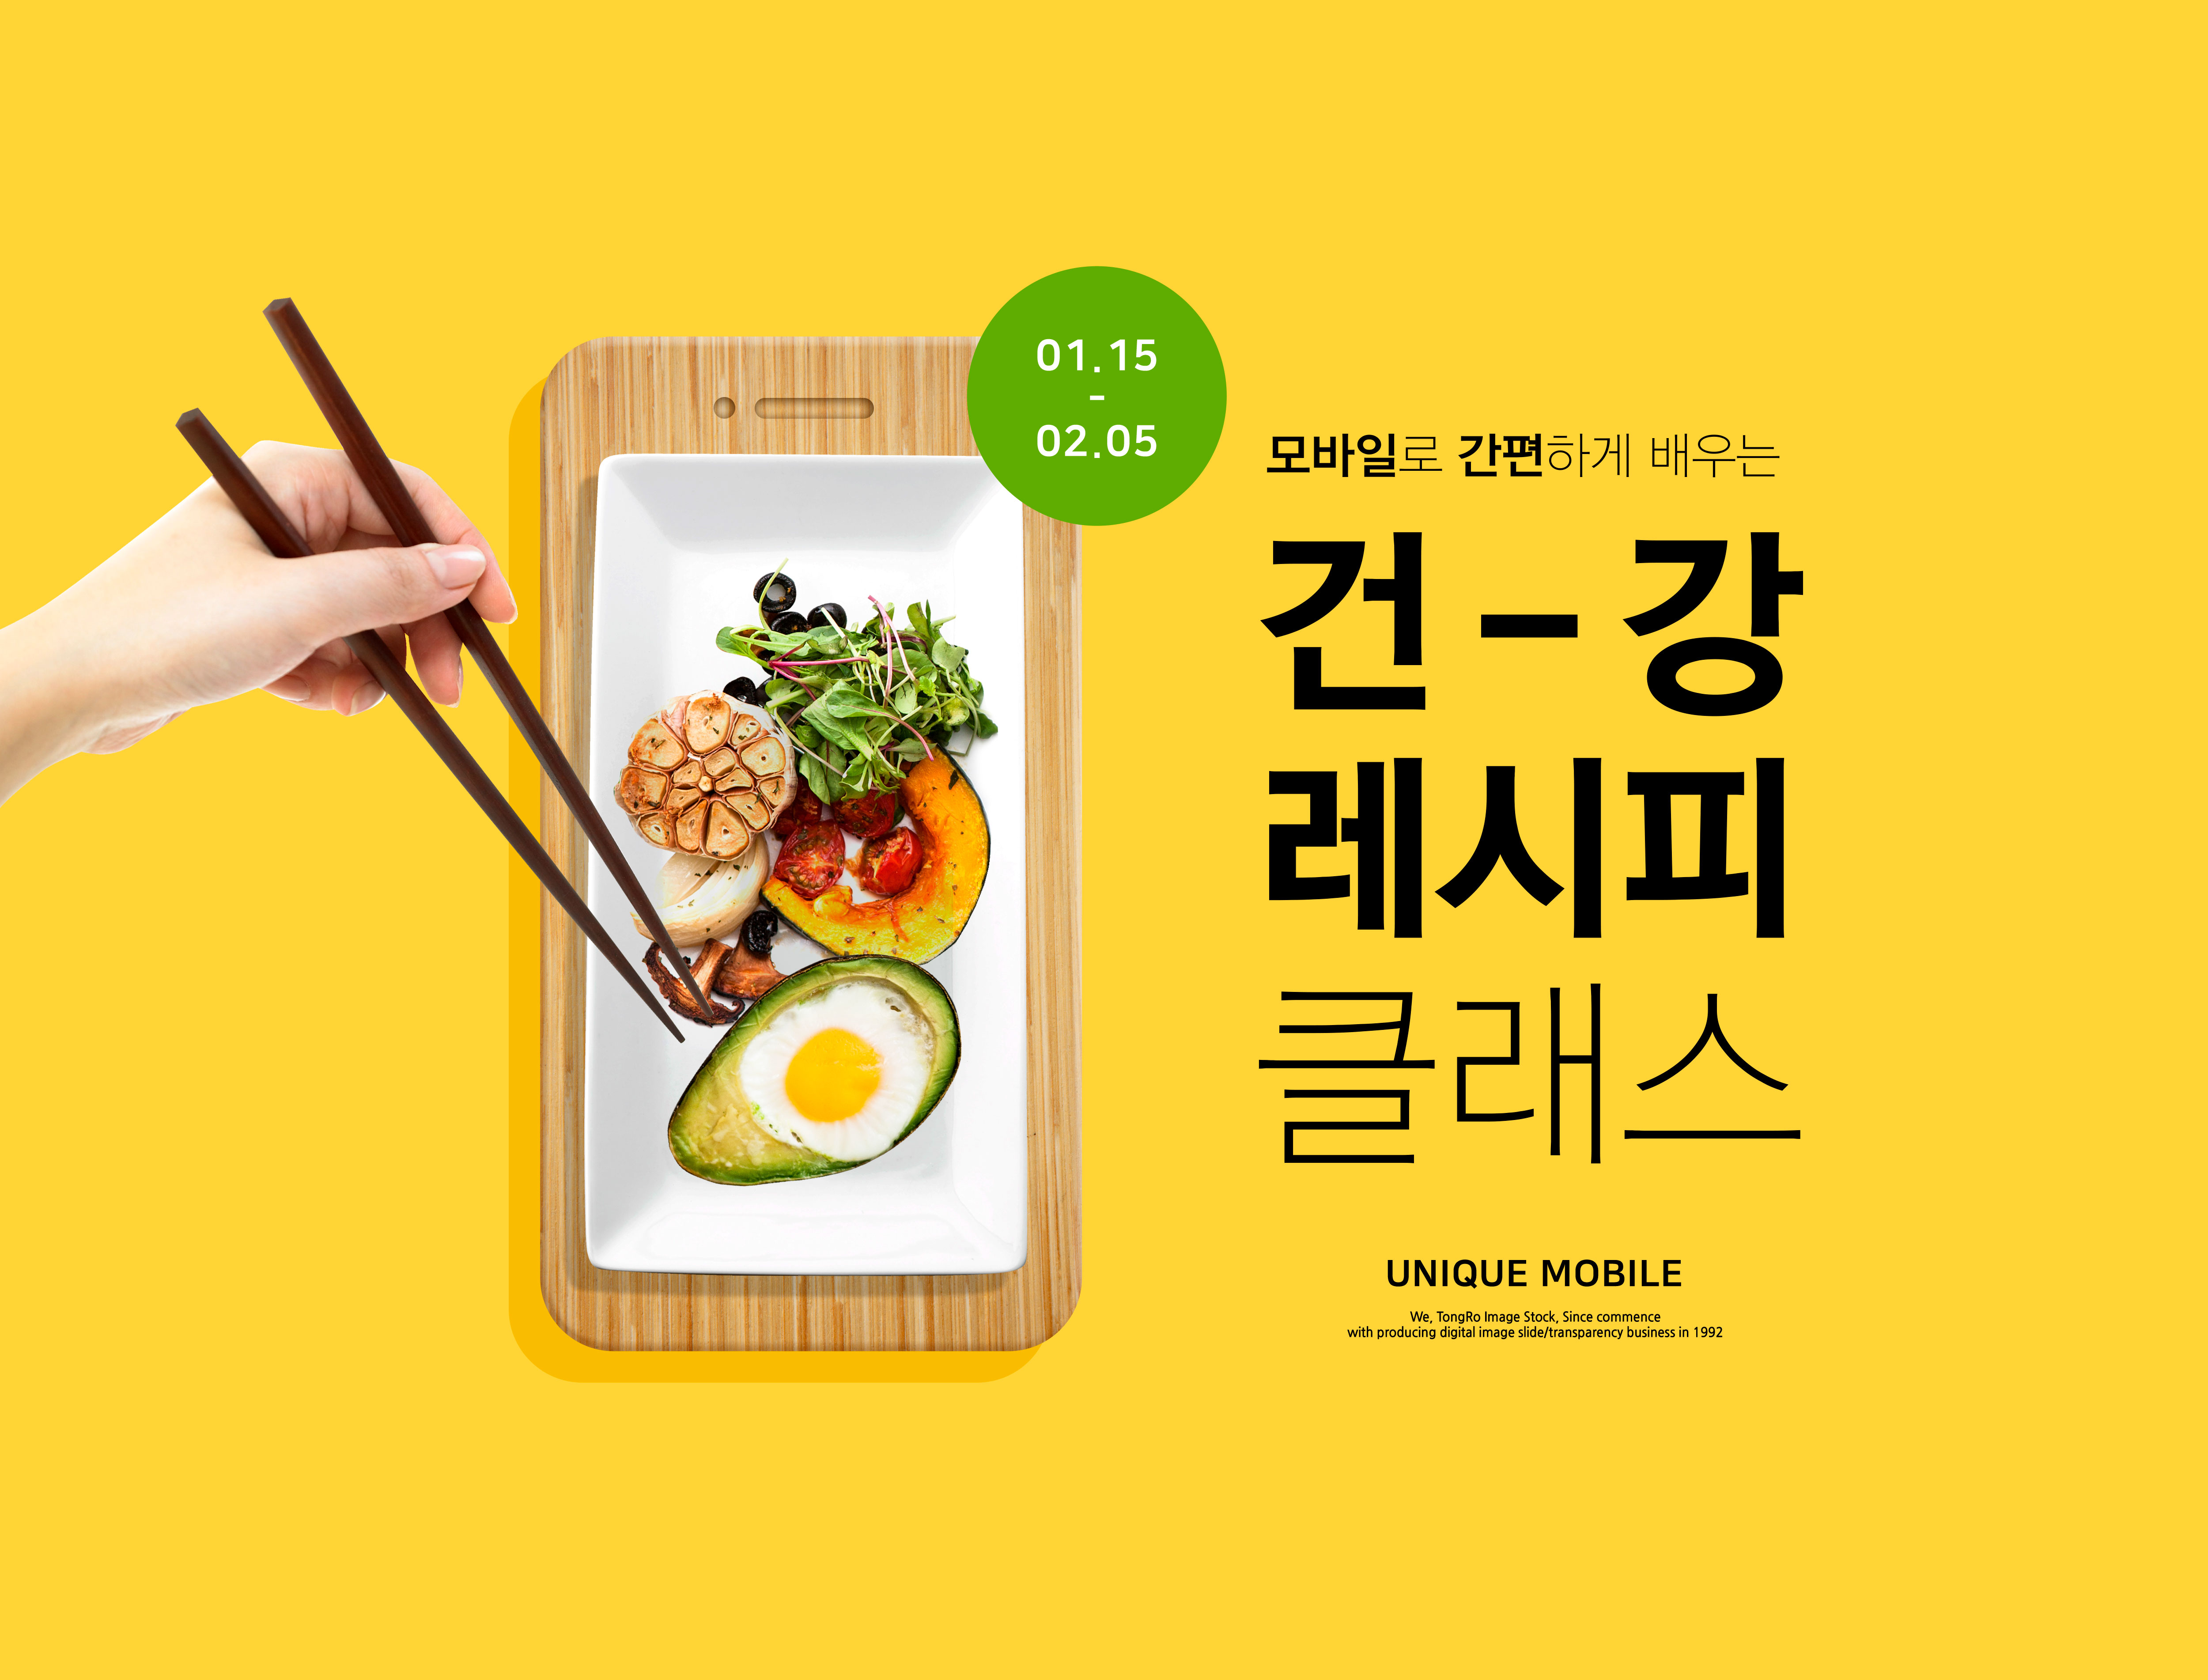 健康食谱饮食烹饪课程教学海报PSD素材素材库精选韩国素材插图